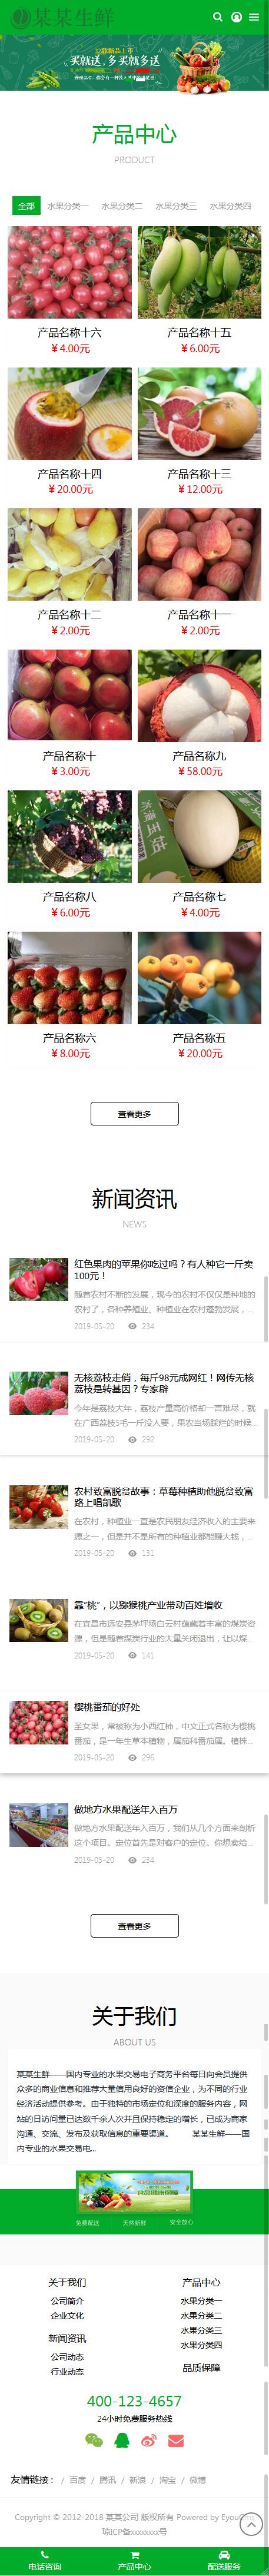 易优cms绿色响应式水果生鲜农产品企业网站模板源码 自适应手机端【站长亲测】